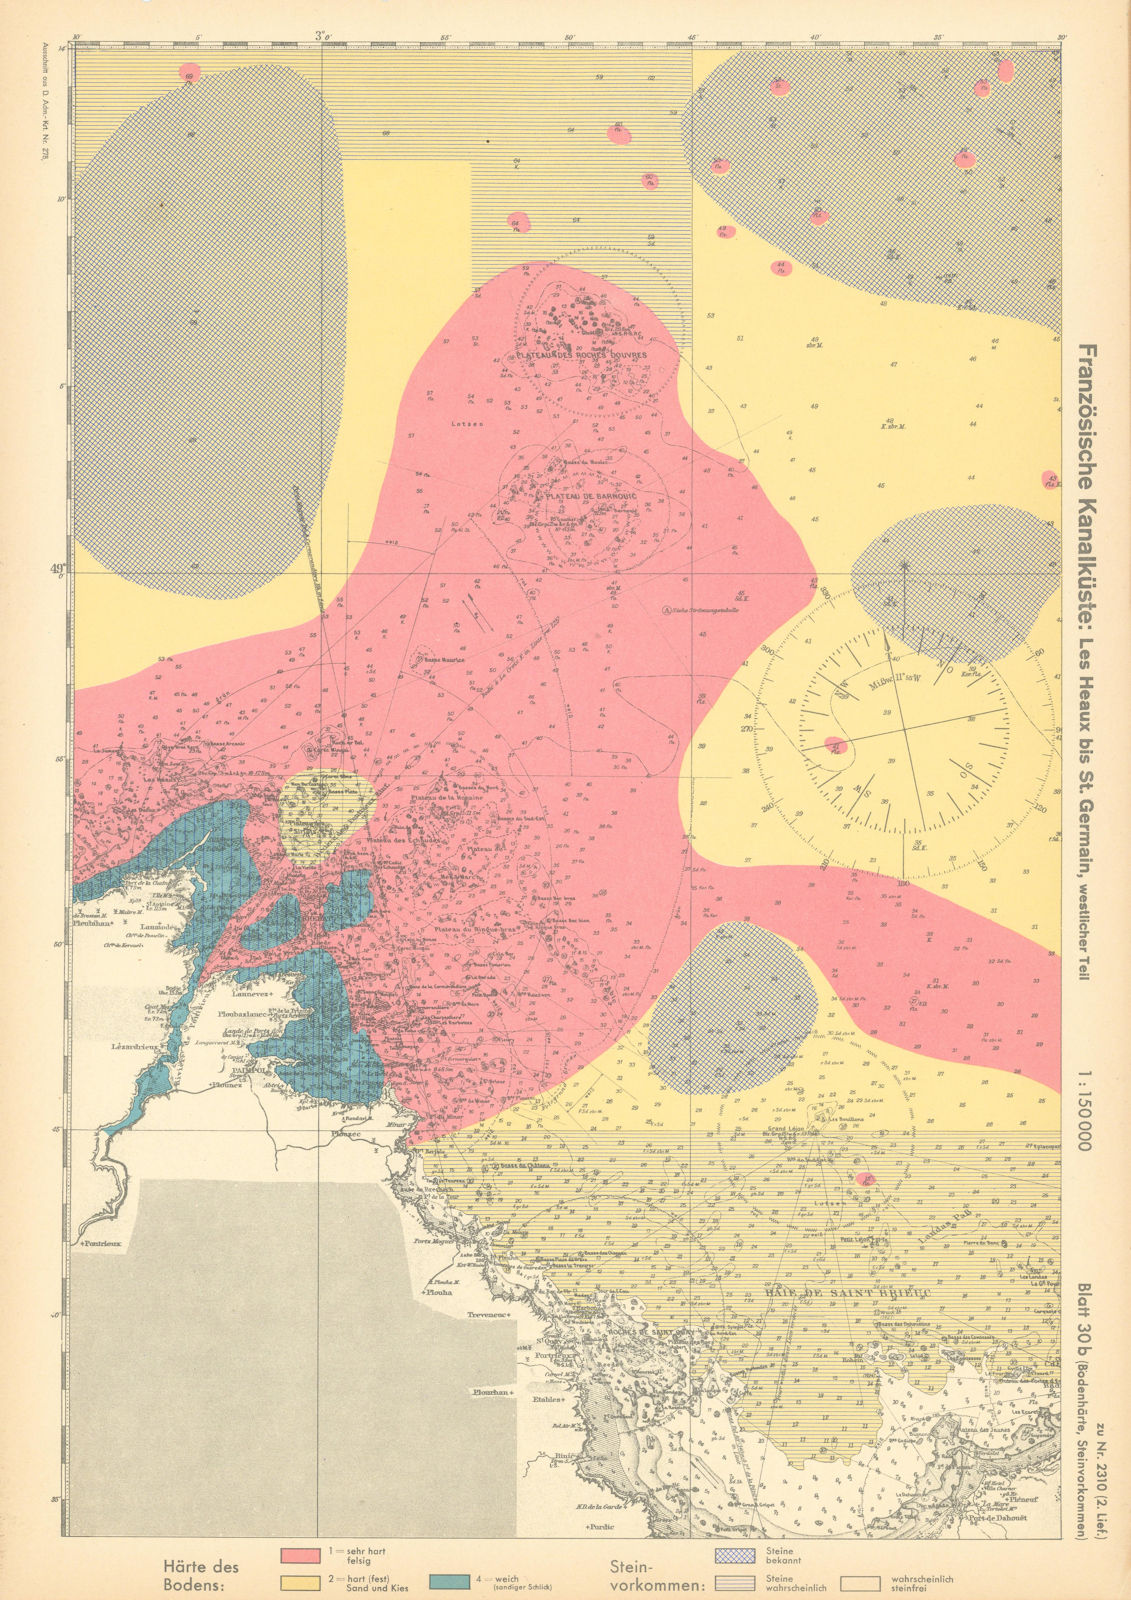 30b. Côtes-d'Armor coast. Saint-Brieuc Bréhat. KRIEGSMARINE Nazi map 1940